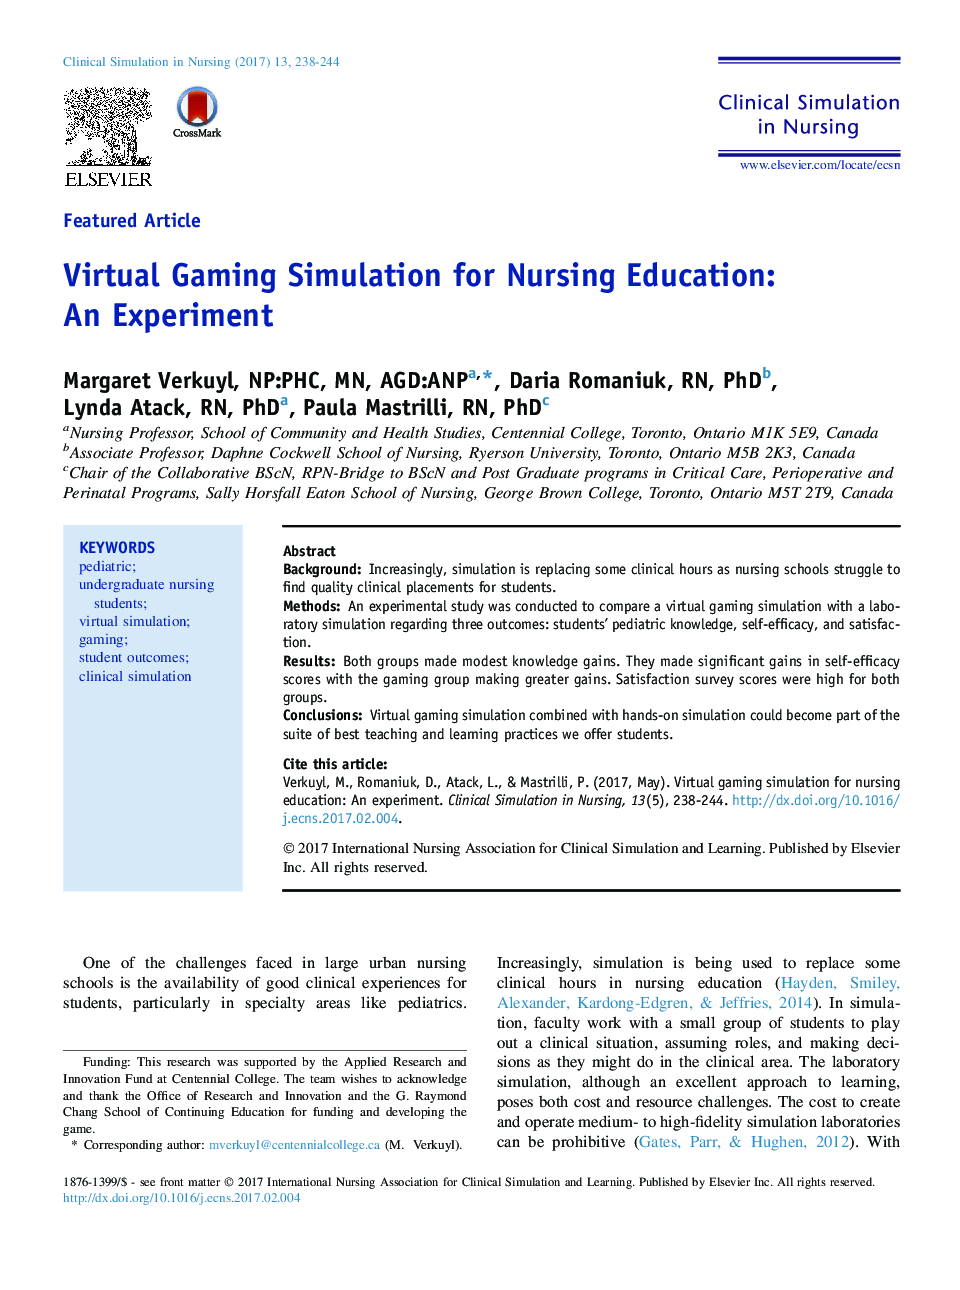 شبیه سازی بازی های مجازی برای آموزش پرستاری: آزمایش 